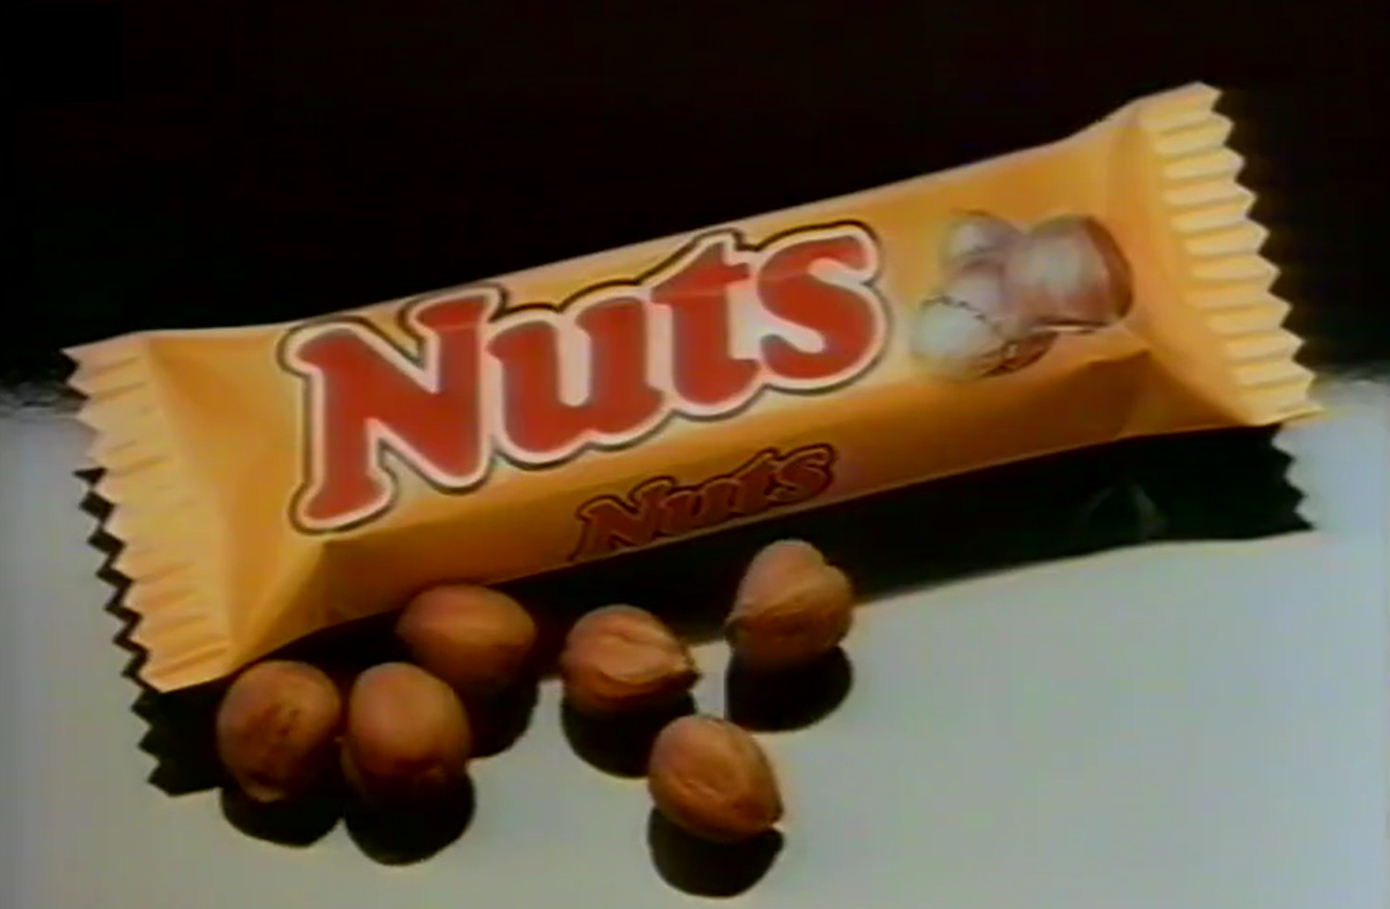 Nuts, Barre chocolat nuts, barre chocolatée, barre chocolat caramel